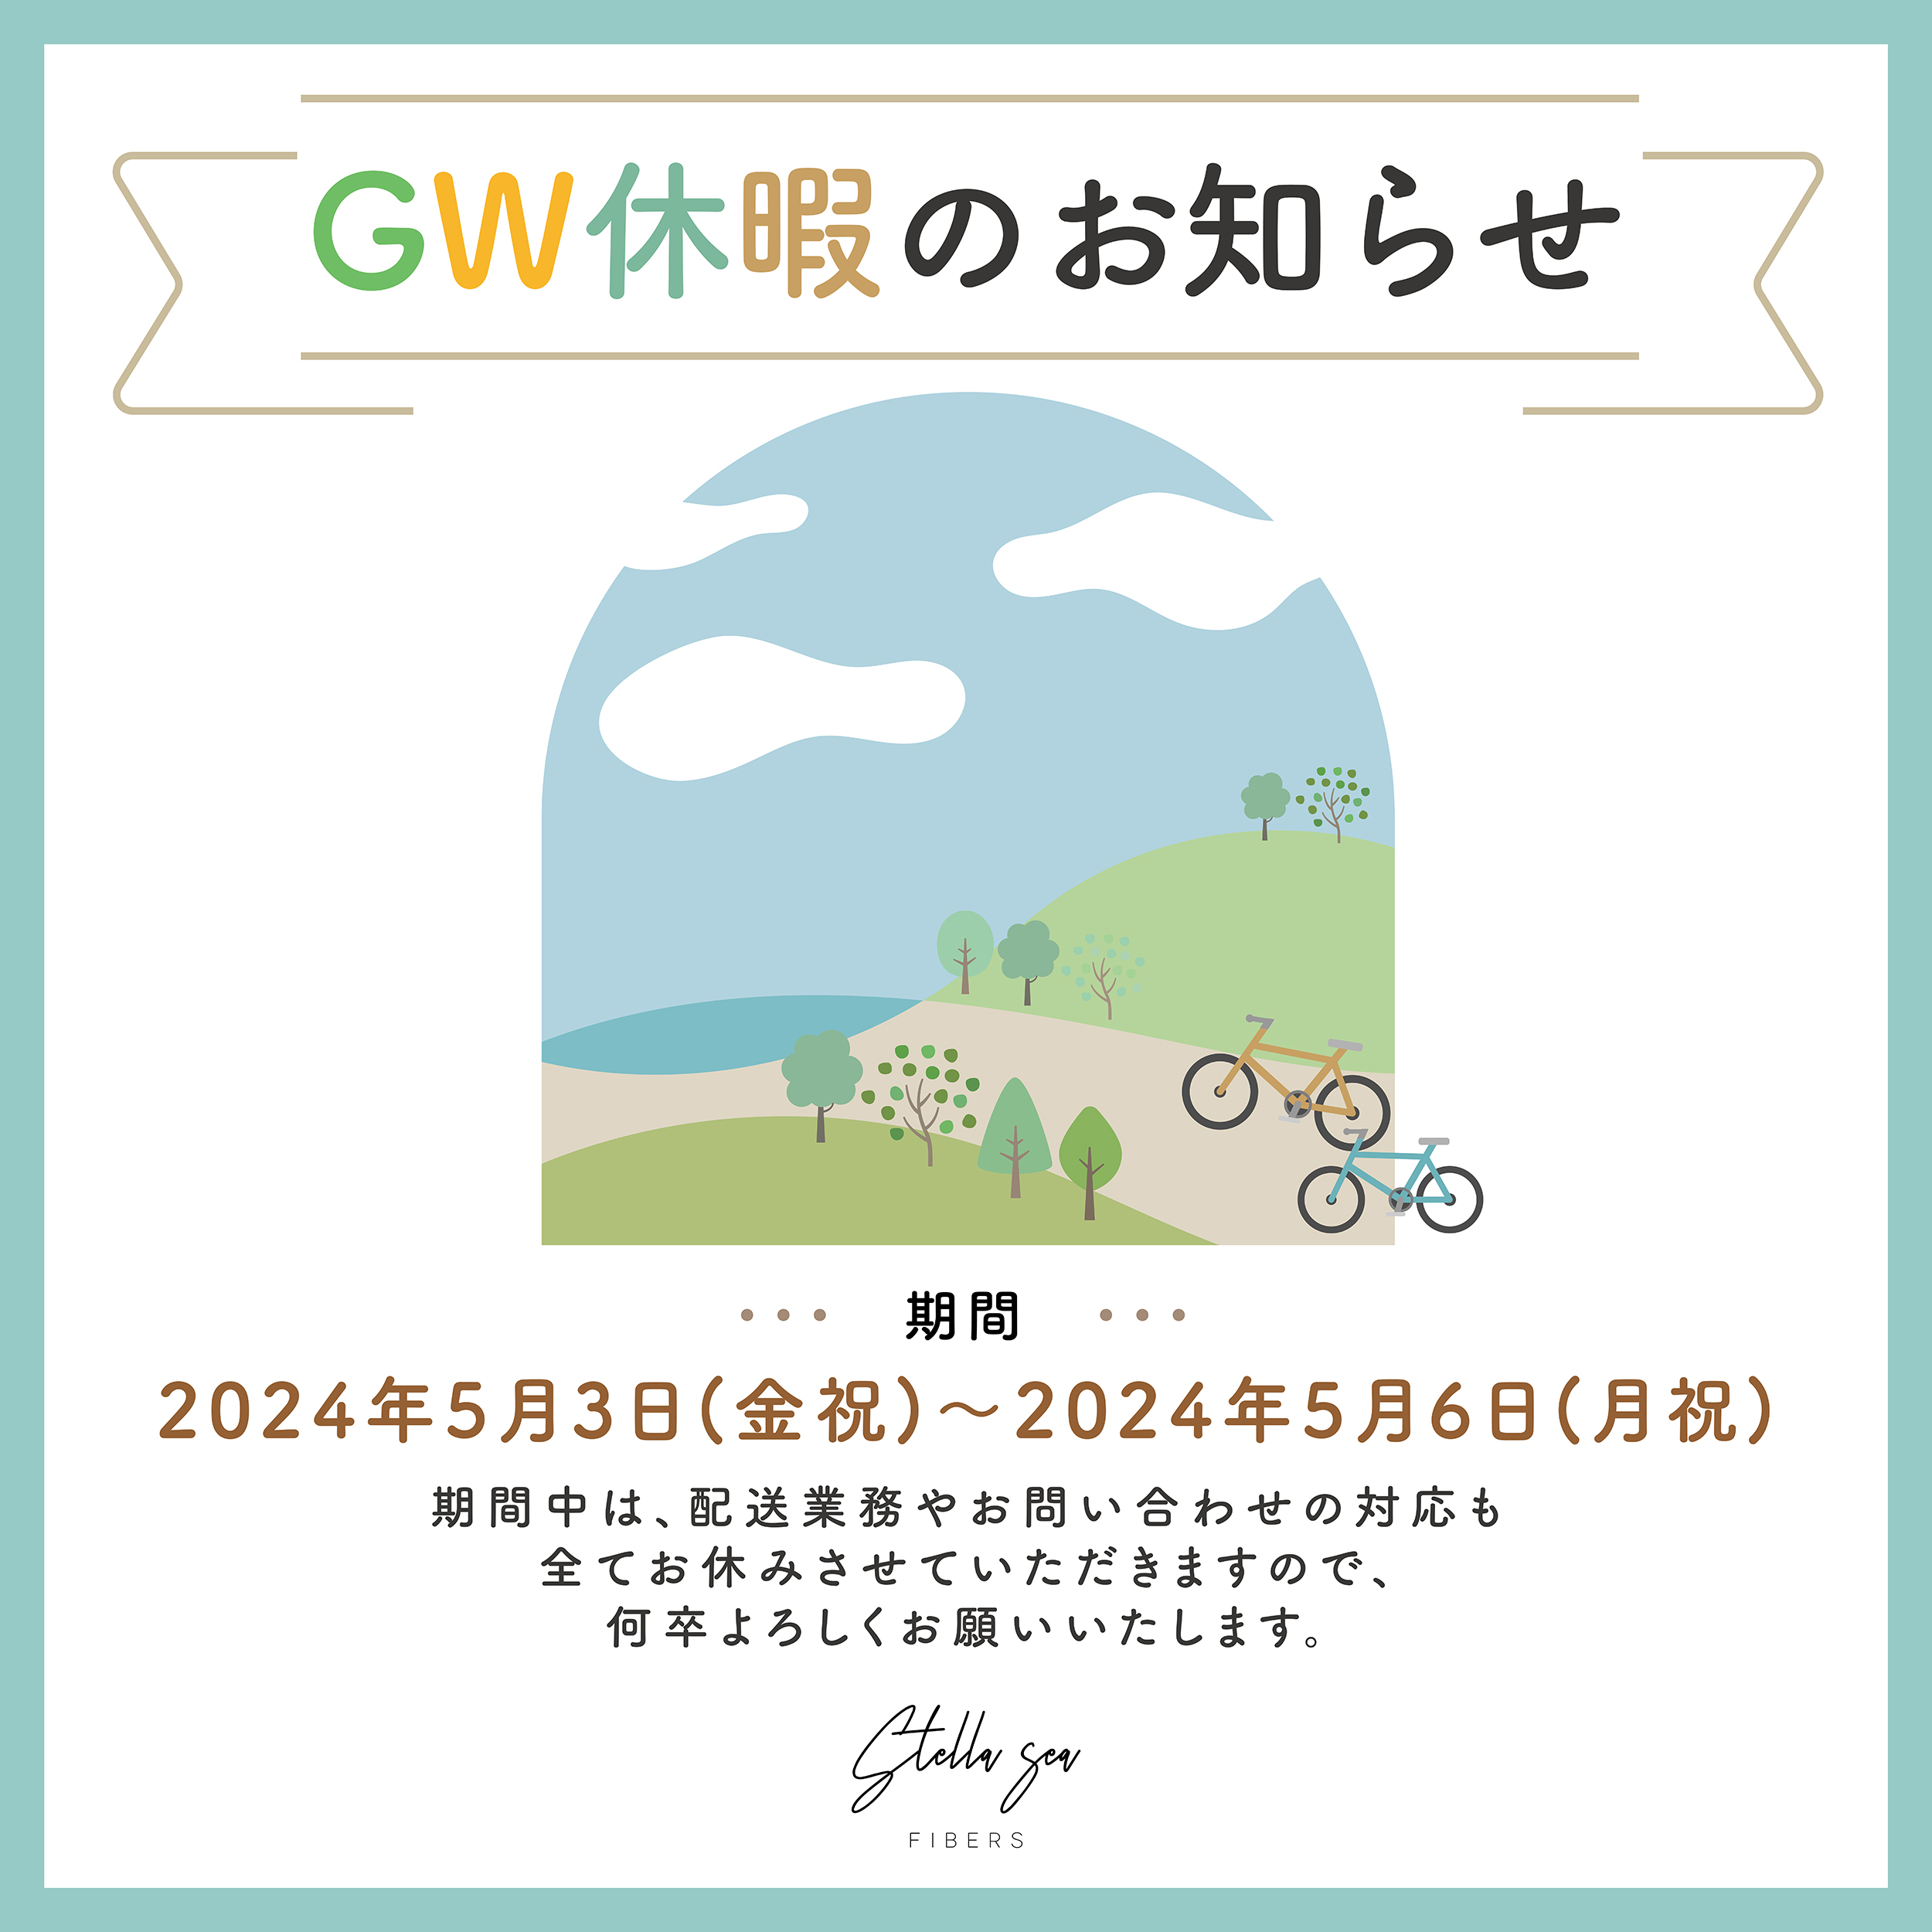 【GW休暇のお知らせ】